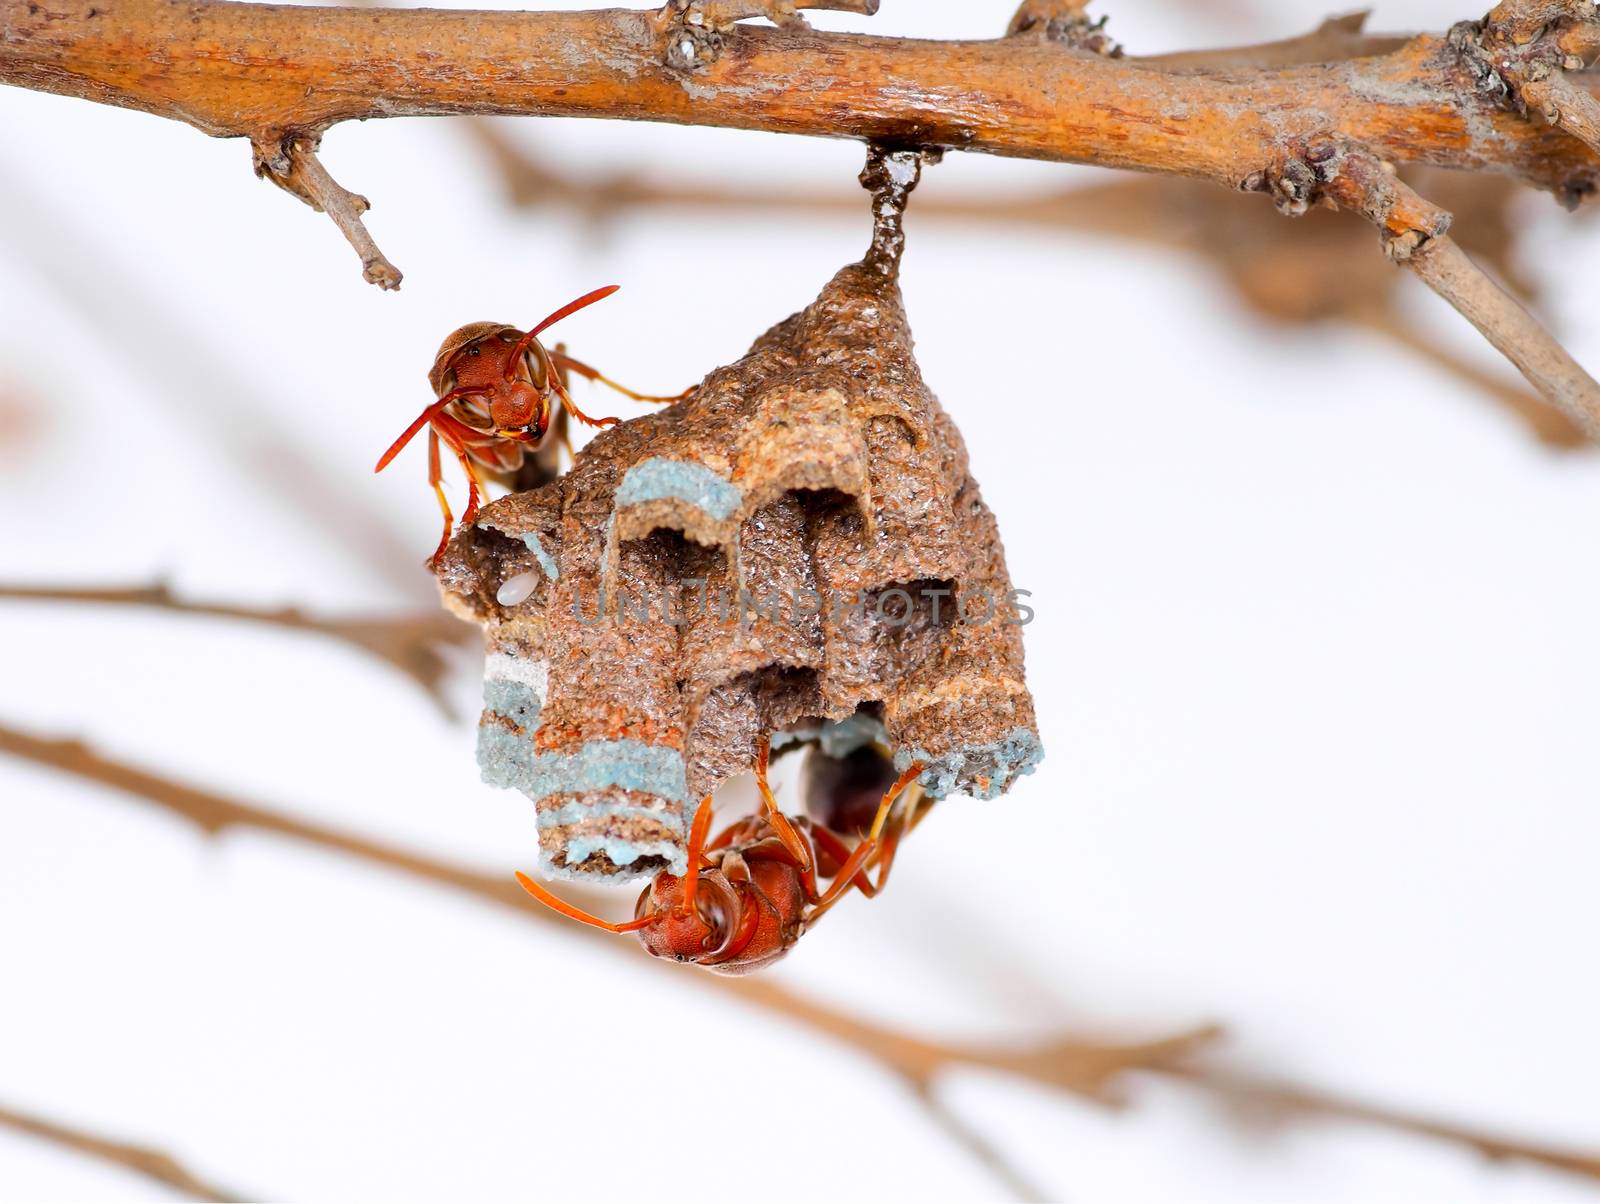 Wasp nest on tree branch by ukjent